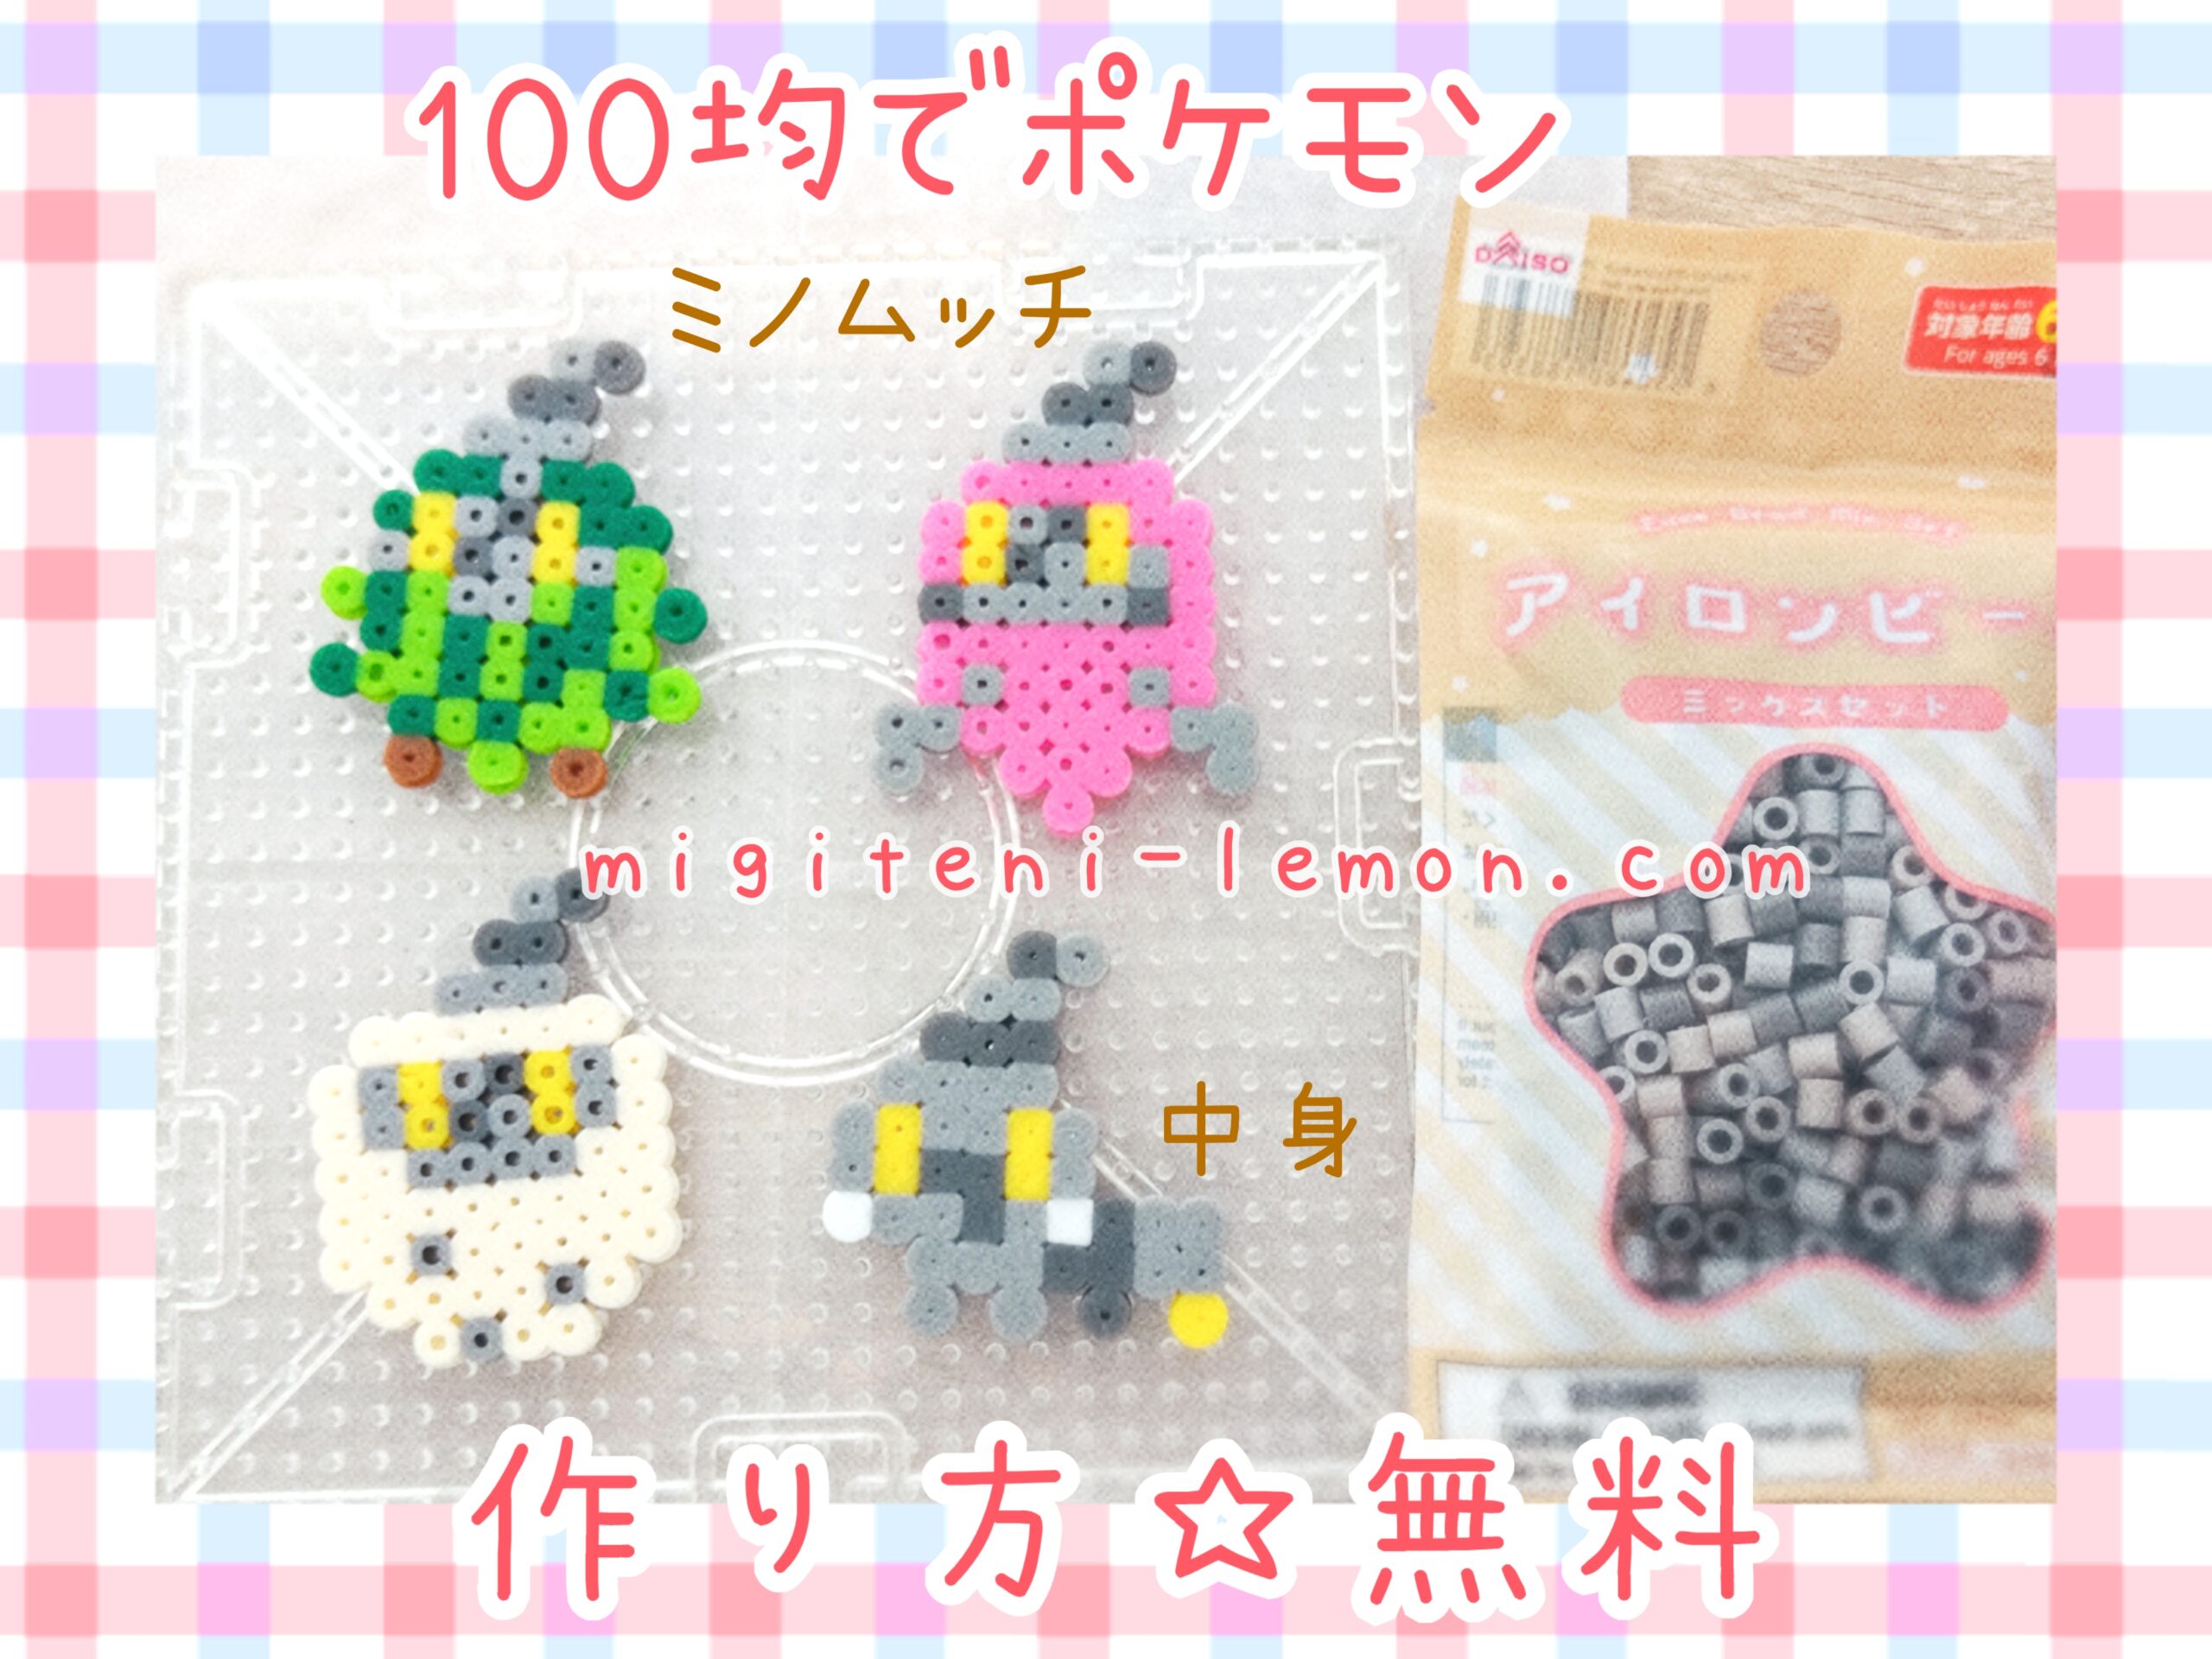 minomucchi-burmy-free-pokemon-beads-zuan